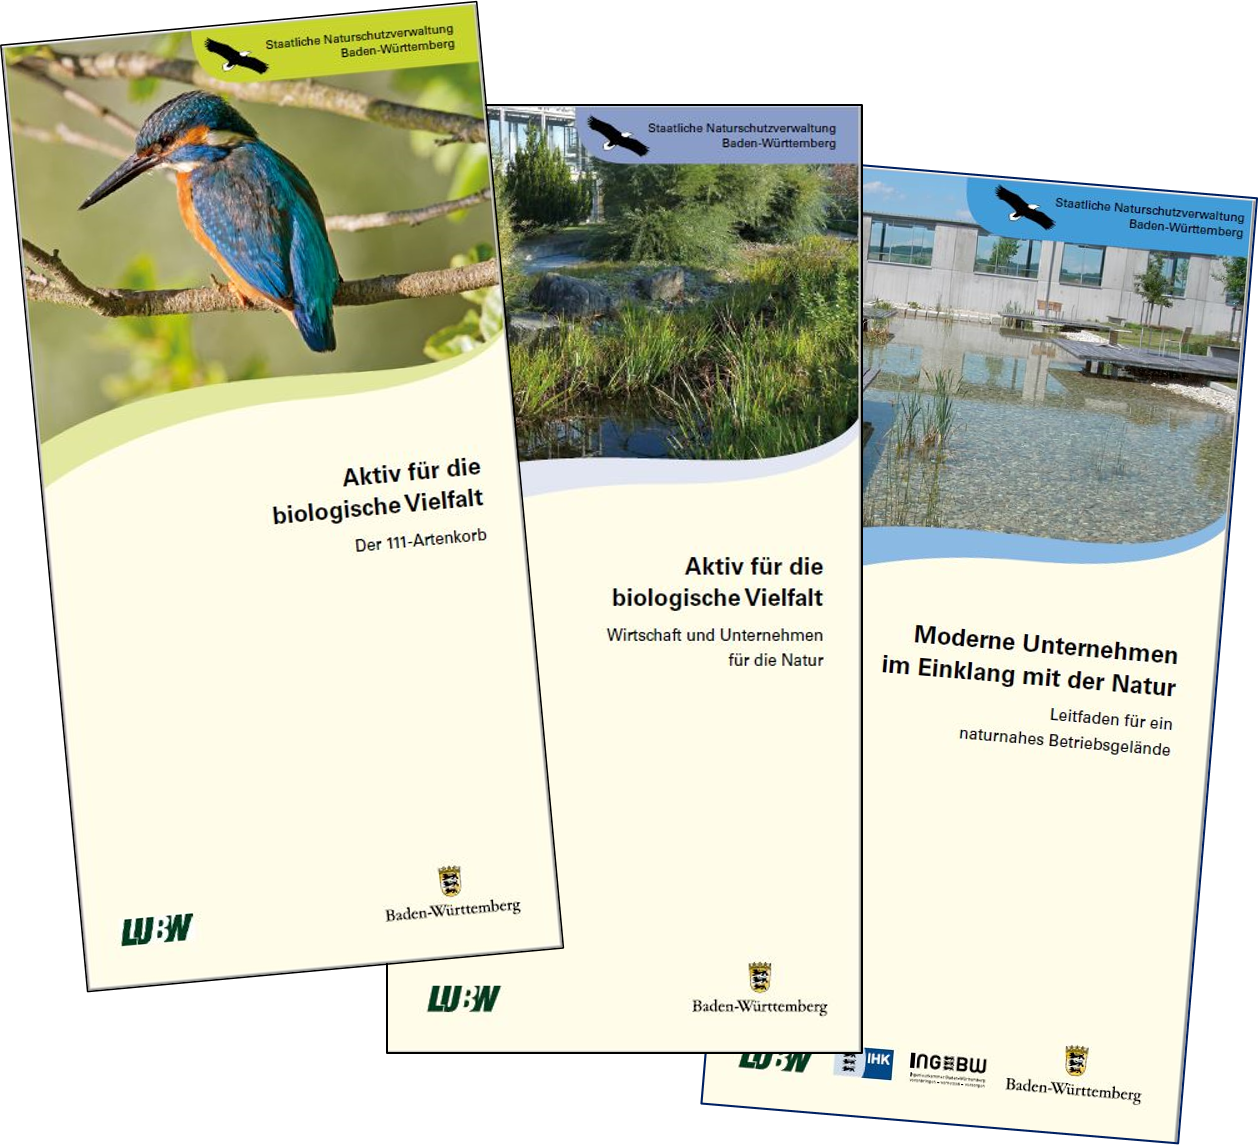 Bild zeigt die drei aktualisierten Flyer; von links nach rechts die Titel: "Der 111-Artenkorb", "Wirtschaft und Unternehmen für die Natur" und "Moderne Unternehmen im Einklang mit der Natur"